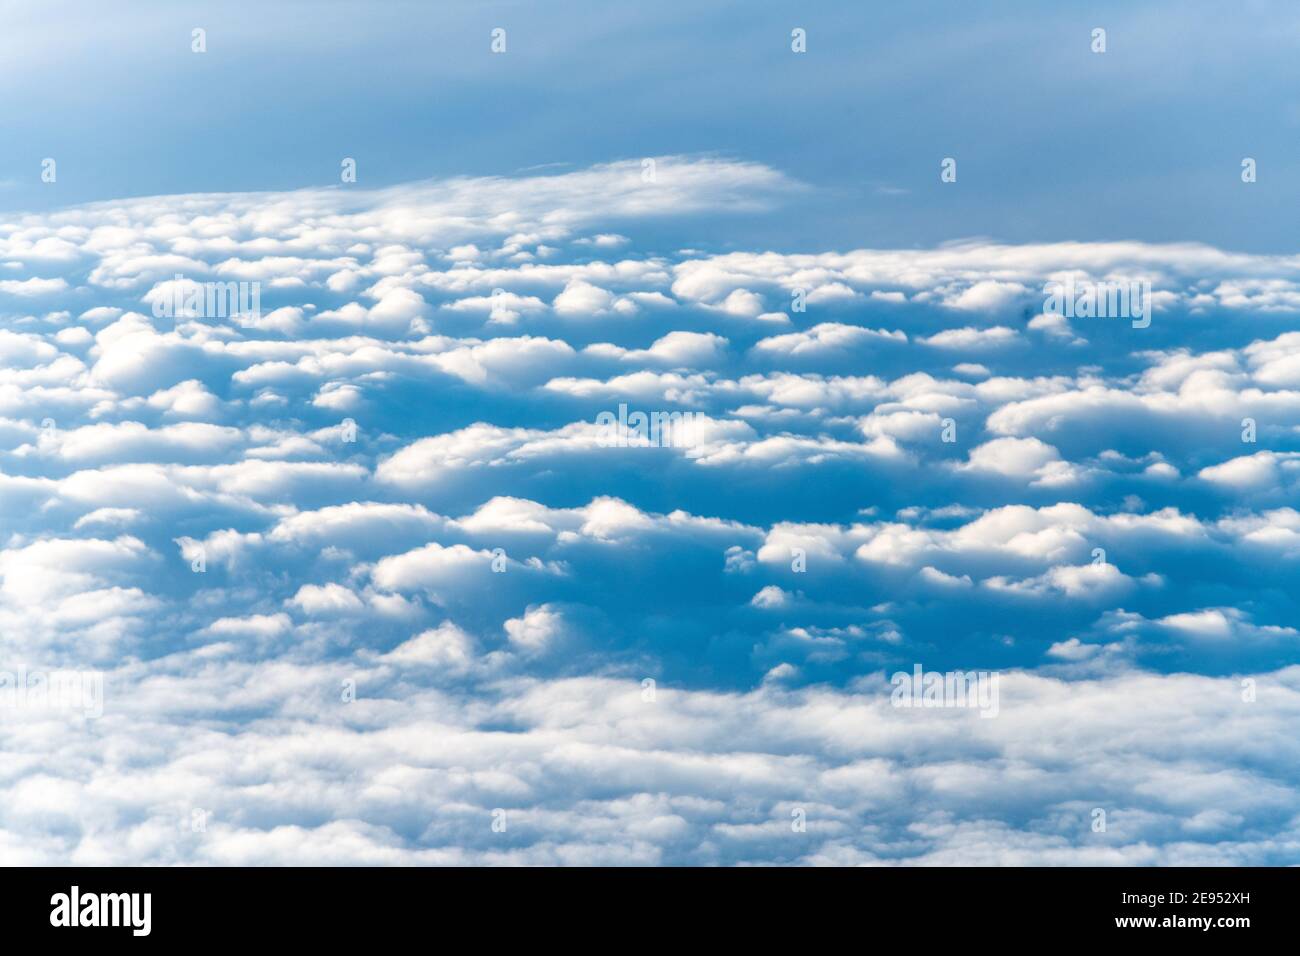 Motif de nuages vus d'un angle de vue élevé Banque D'Images